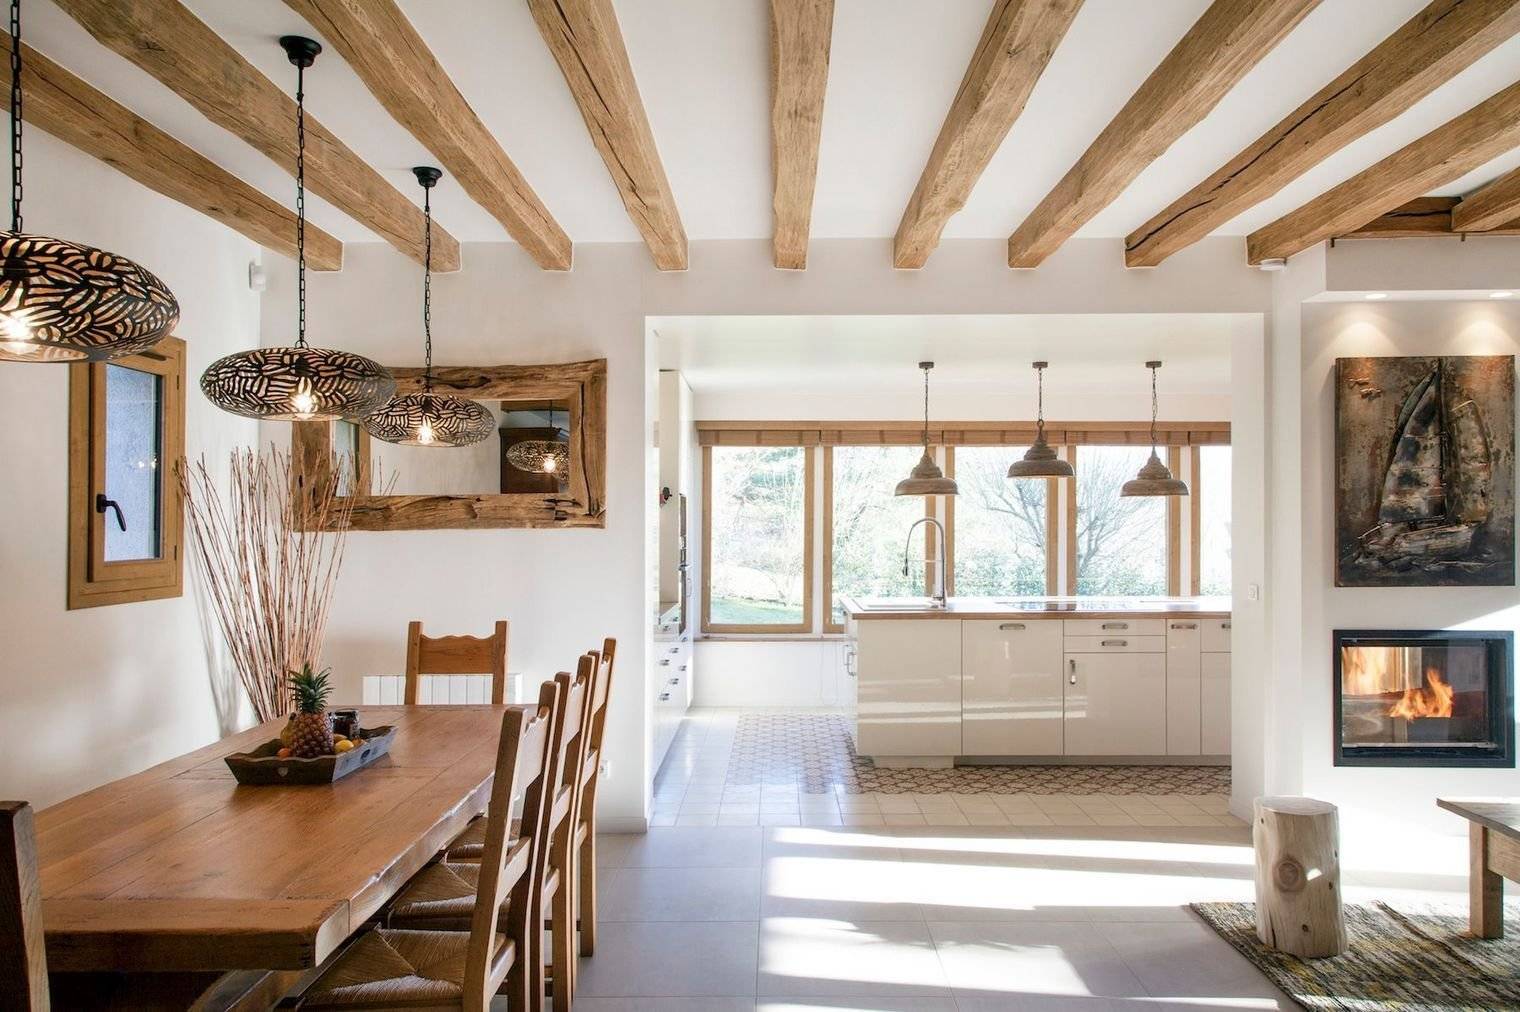 Потолок с балками в деревянном доме: как обыграть дизайн и освещение в деревянном доме с балками, фото идеи